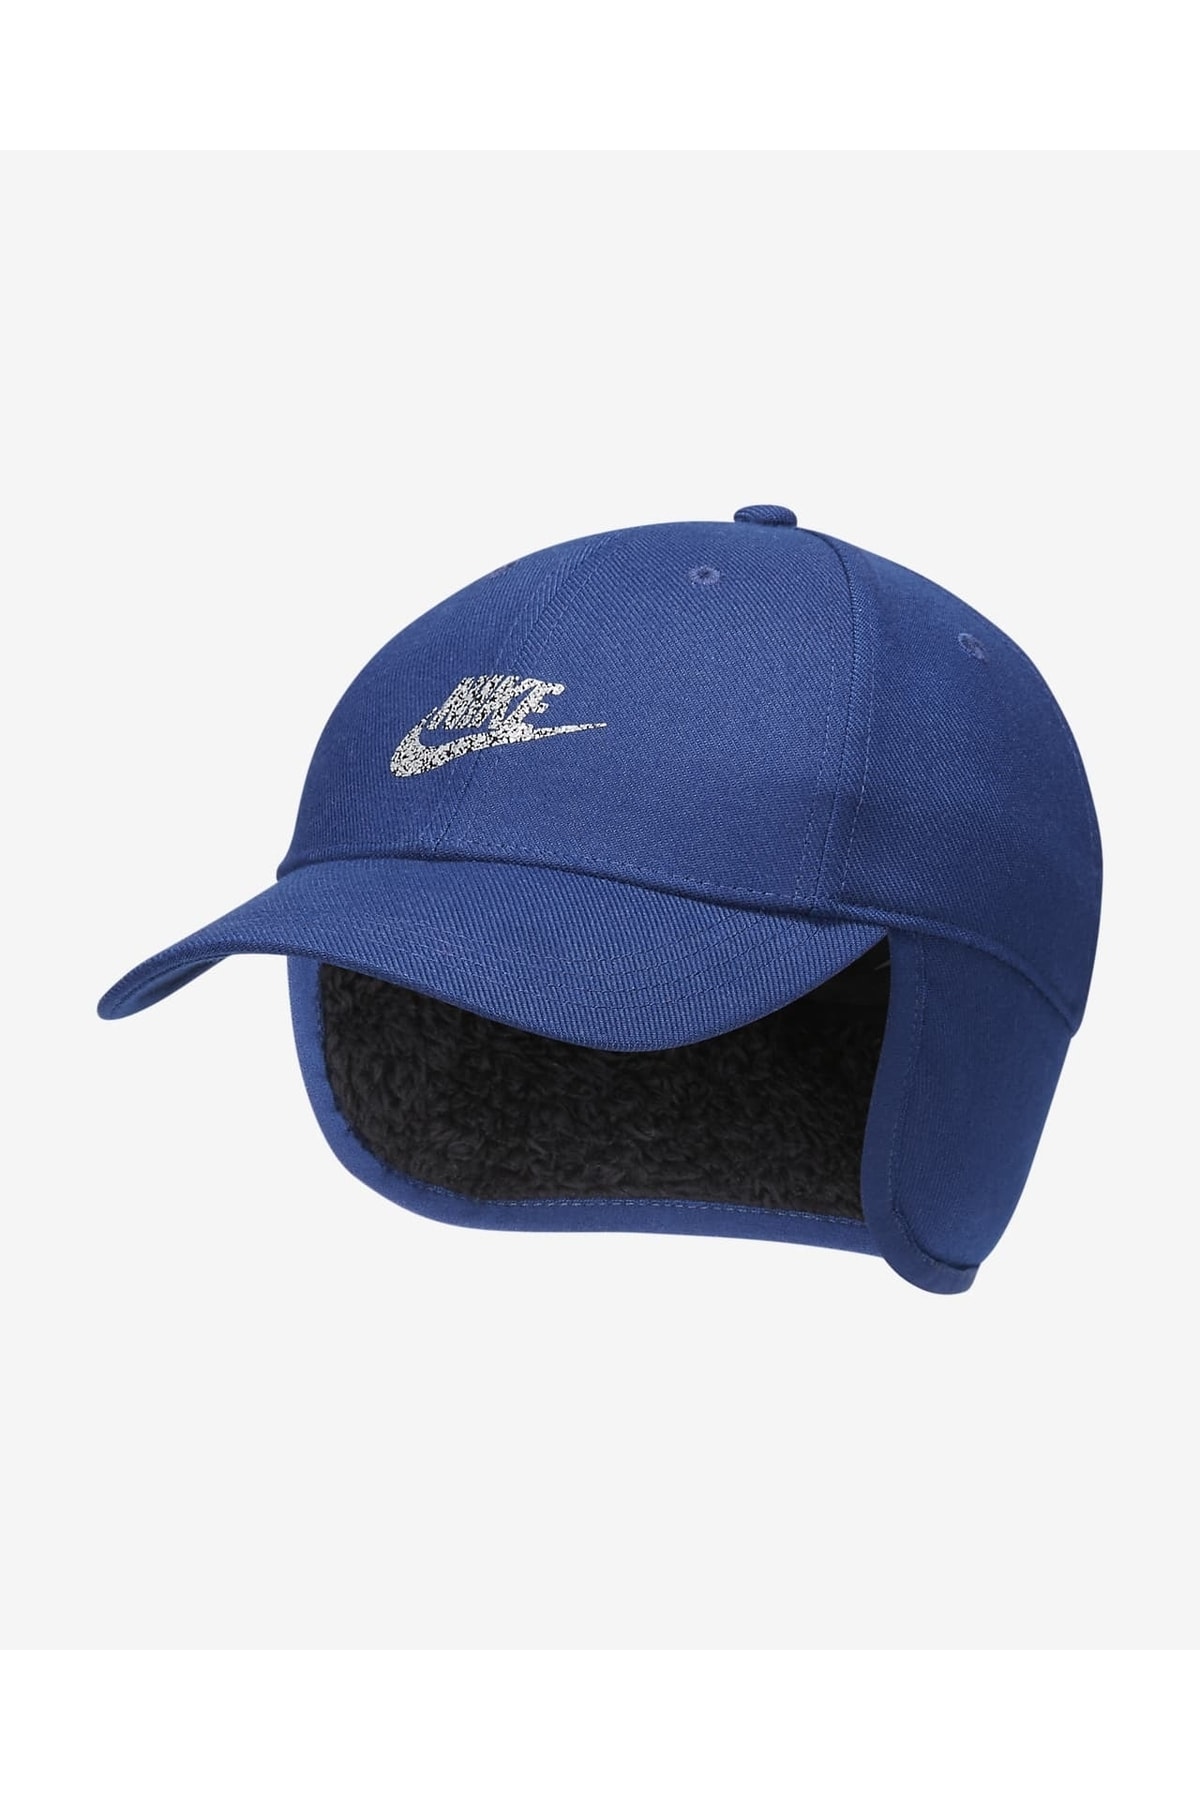 Nike کلاه